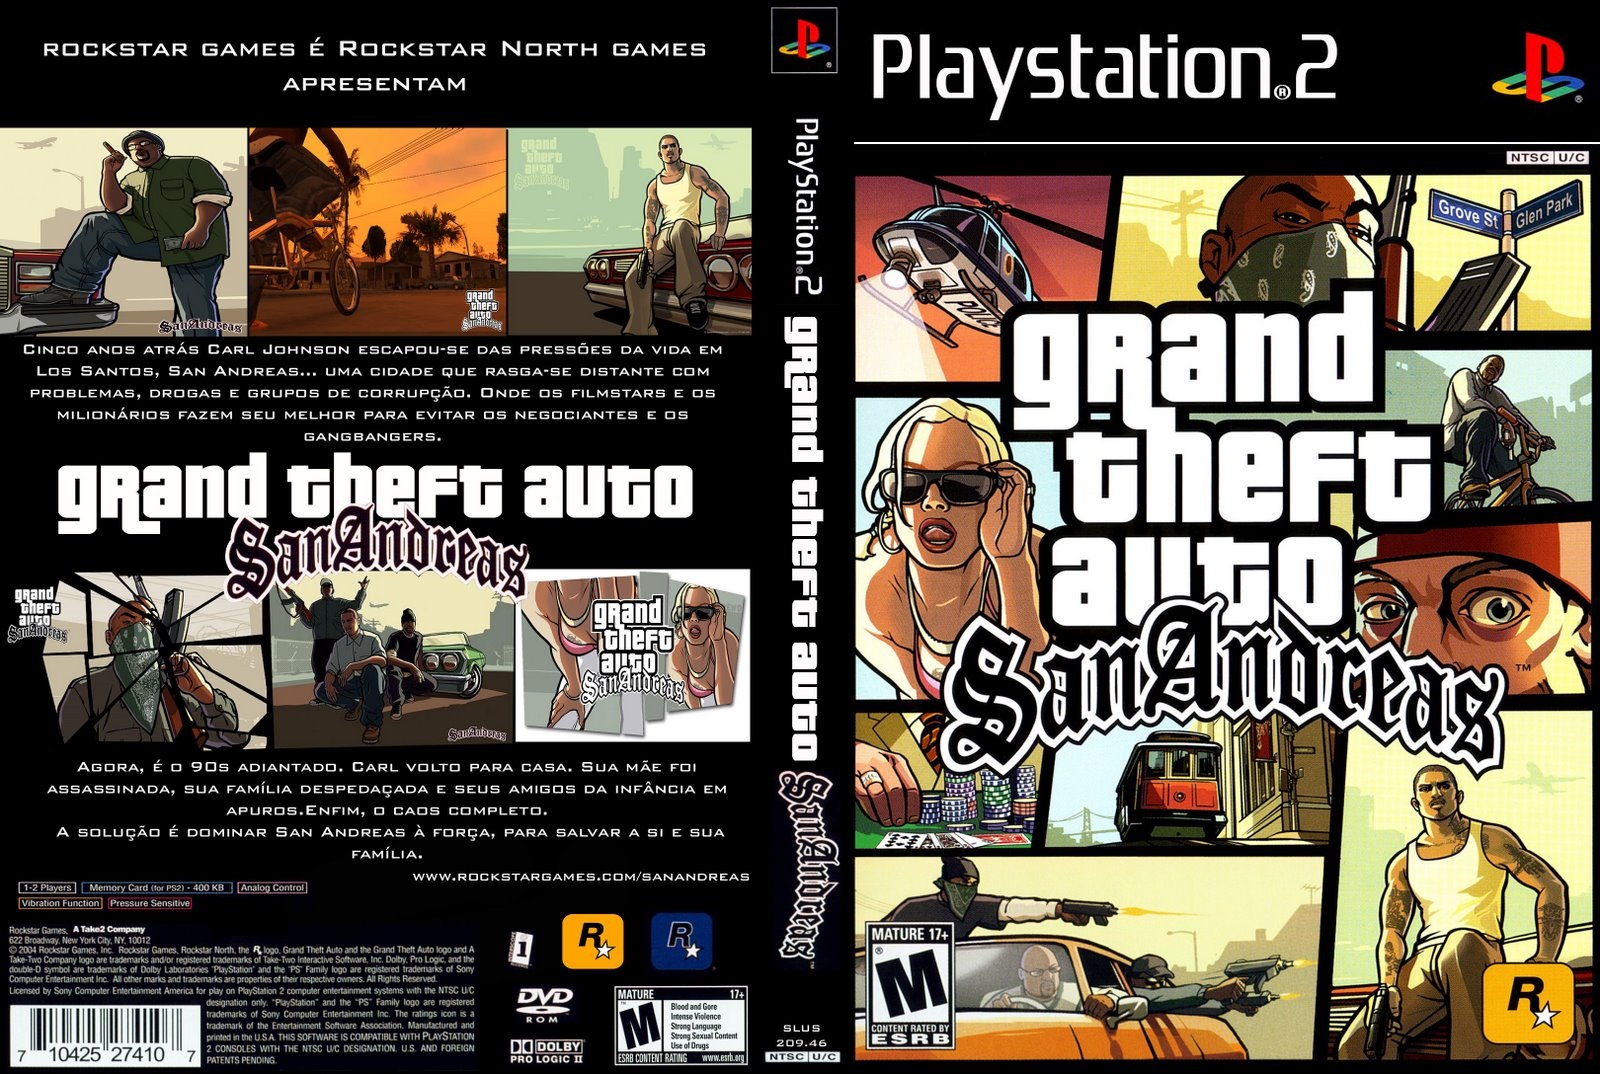 Os Melhores Códigos para GTA San Andreas (PS2) Atualizado - Gritos